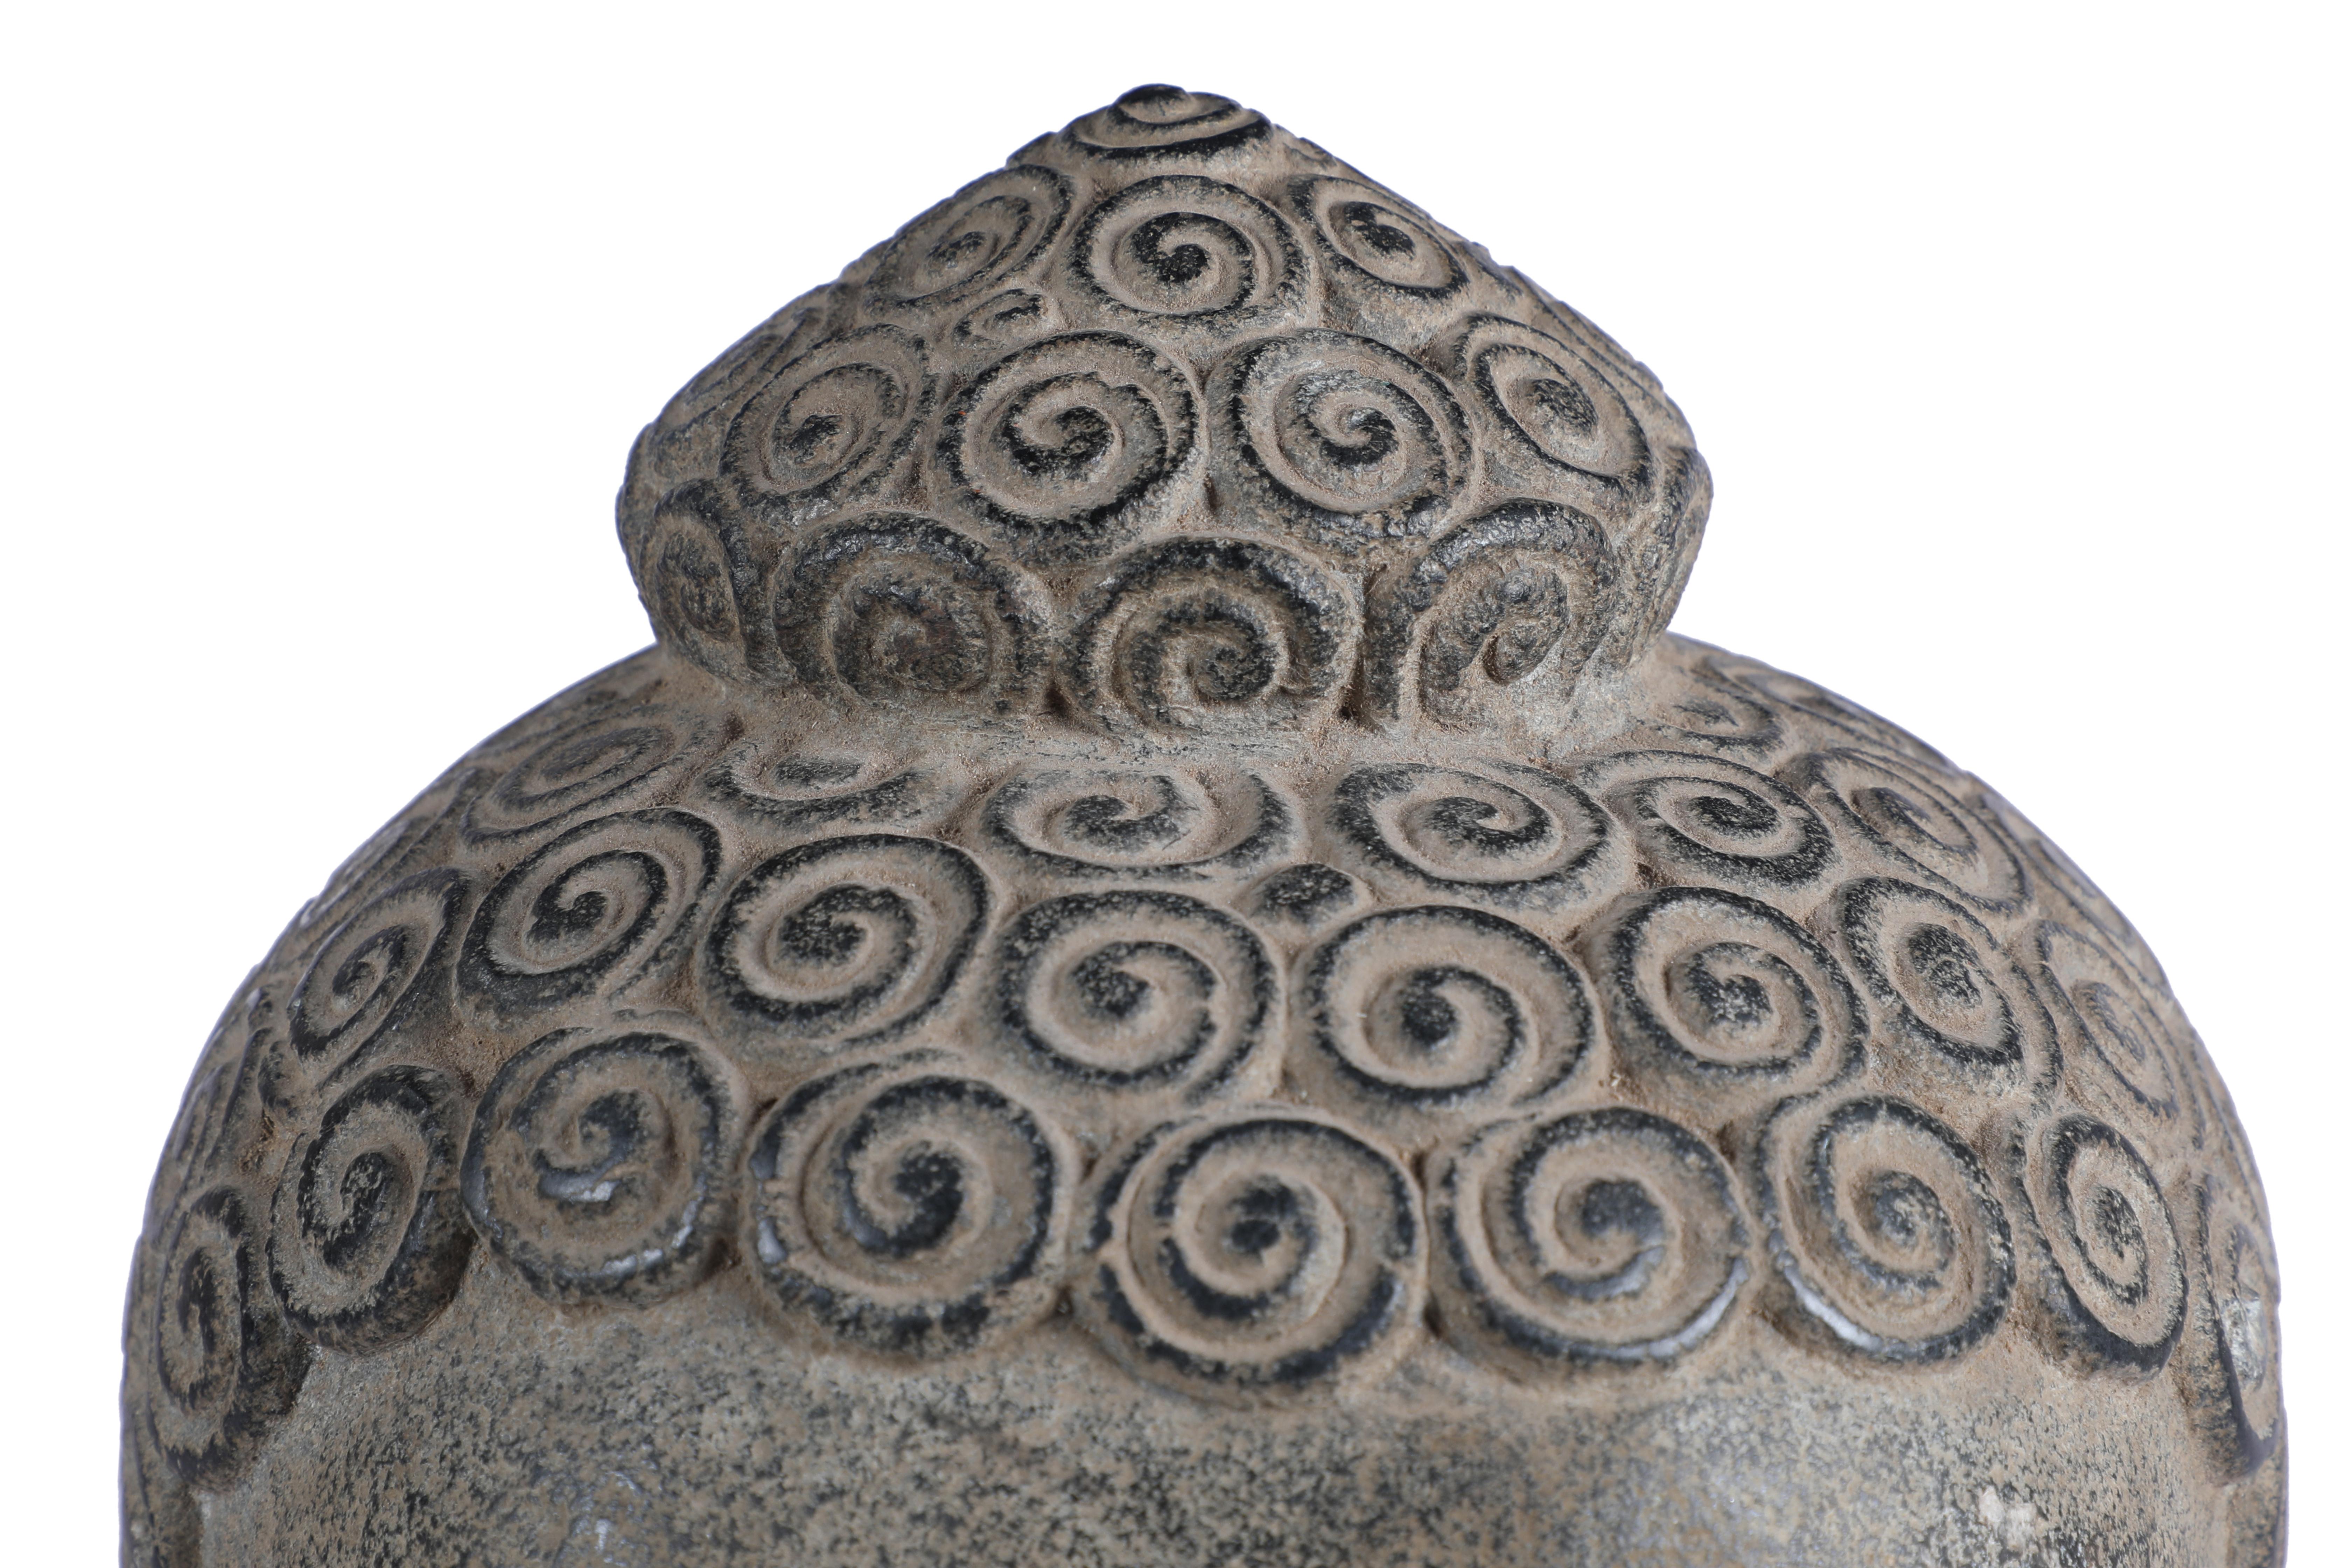 Ein schöner, friedlicher Buddha-Kopf aus Granit auf einem Holzsockel, Anfang 1900, Utttar Pradesh, Nordindien. Zu den handgeschnitzten Merkmalen gehören die typischen Schneckenhauslocken, die verlängerten Ohren, die halbgeschlossenen Augen und das